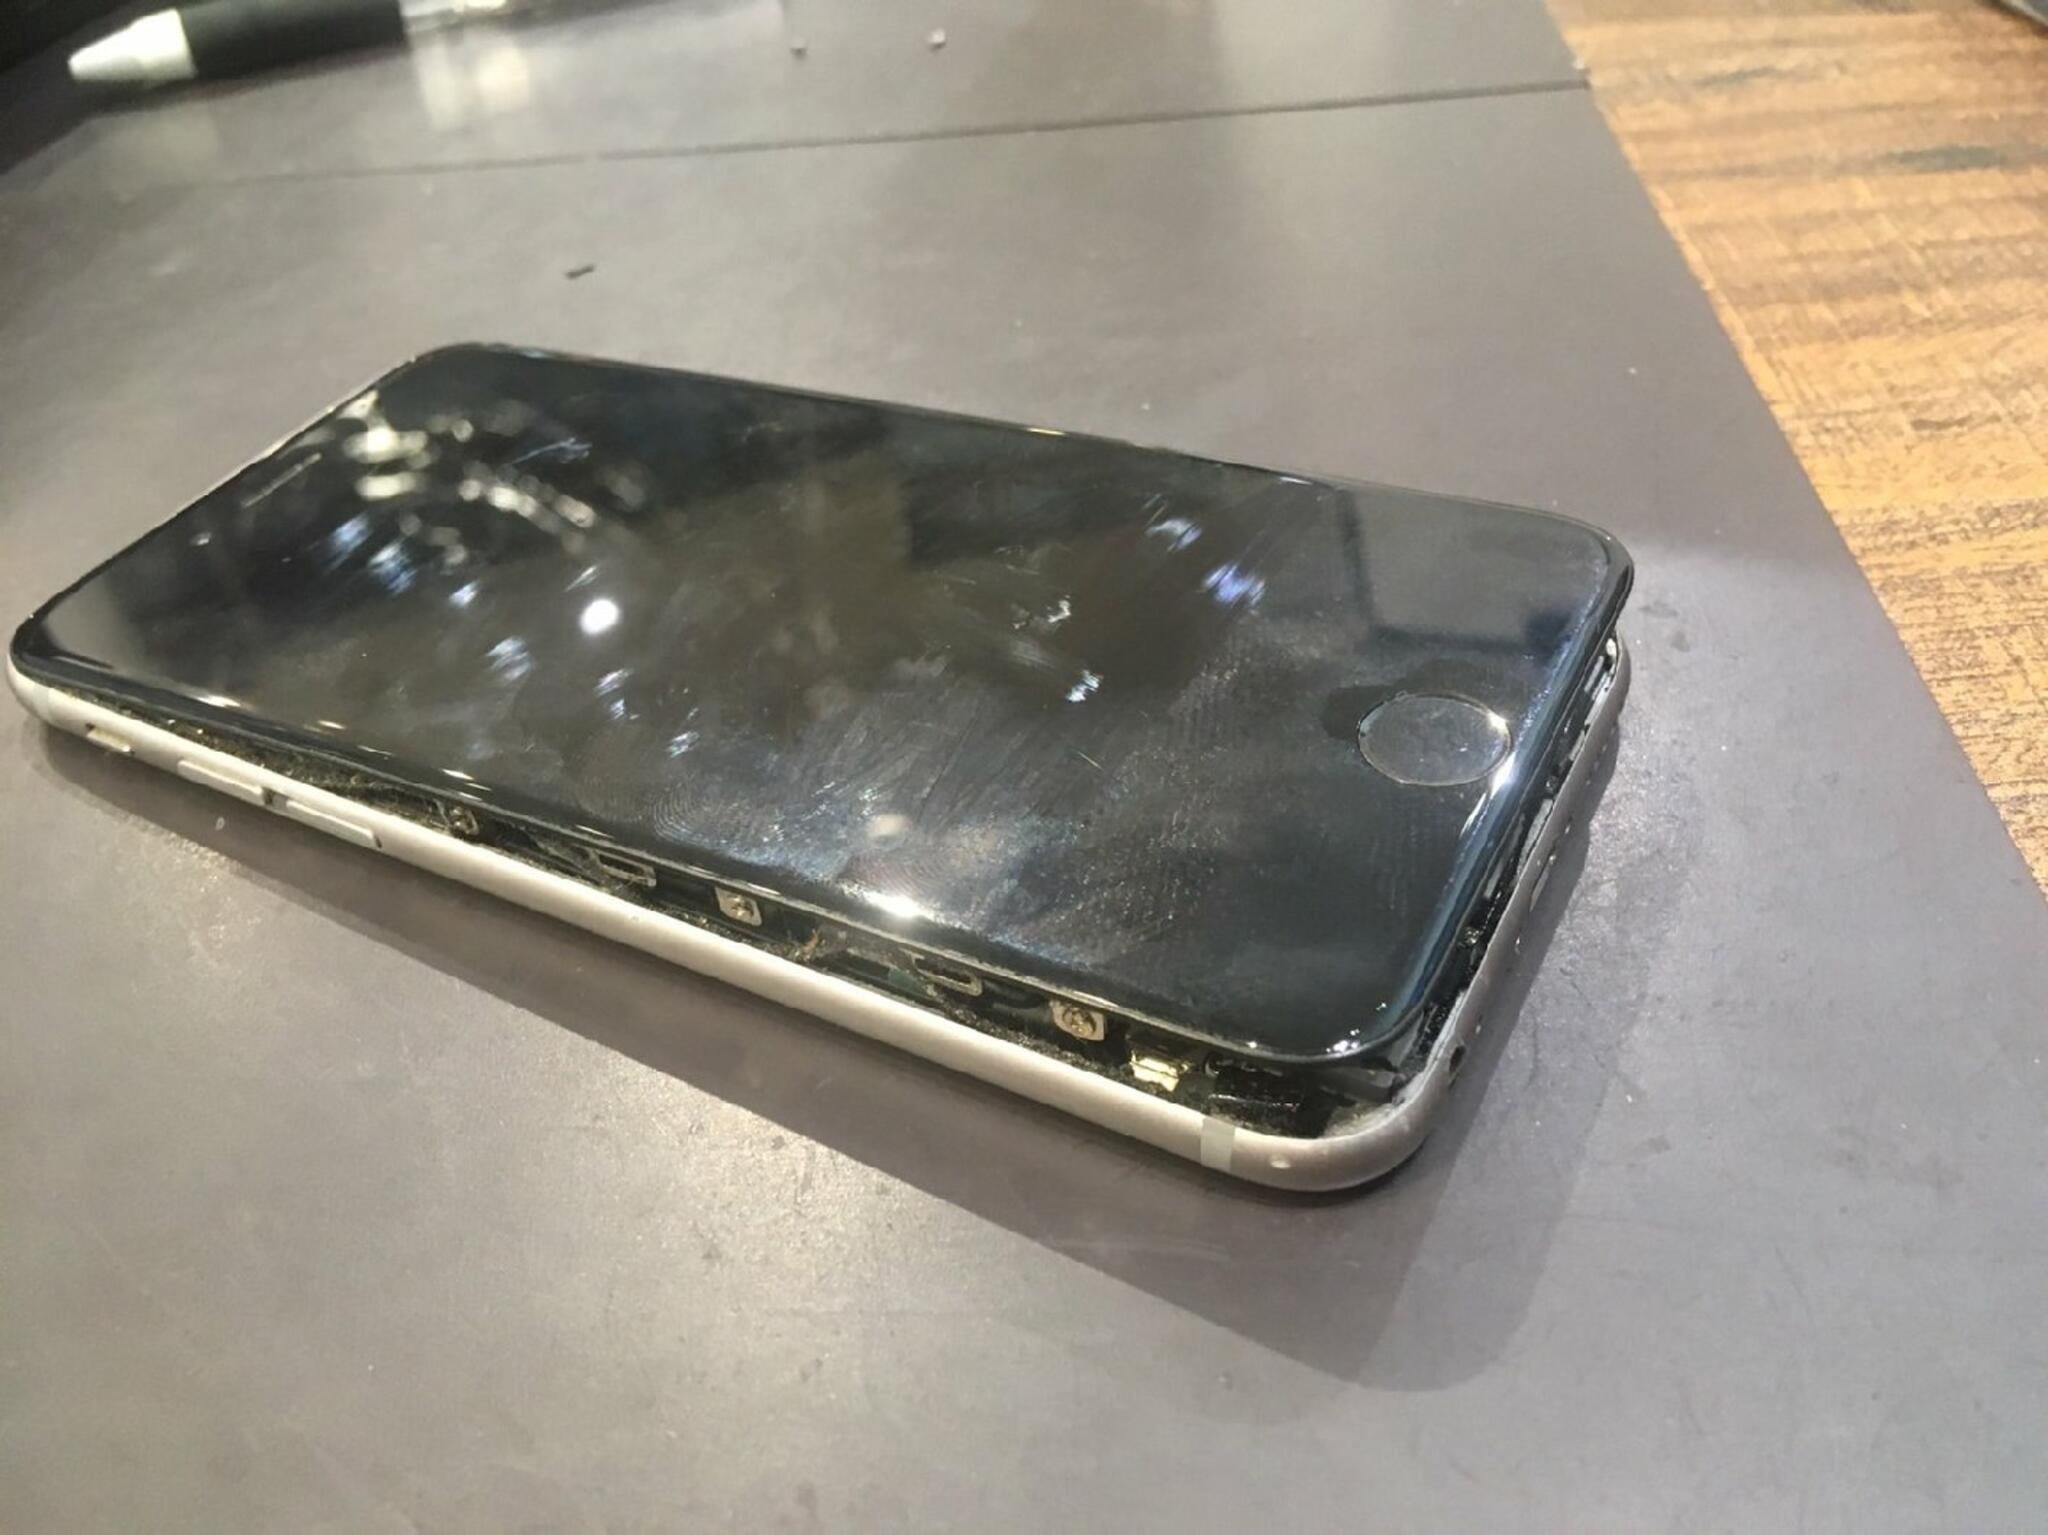 iPhone・iPad・Switch修理店 スマートクール イオンモール広島祇園店からのお知らせ(バッテリーの膨張の放置はやめましょう)に関する写真